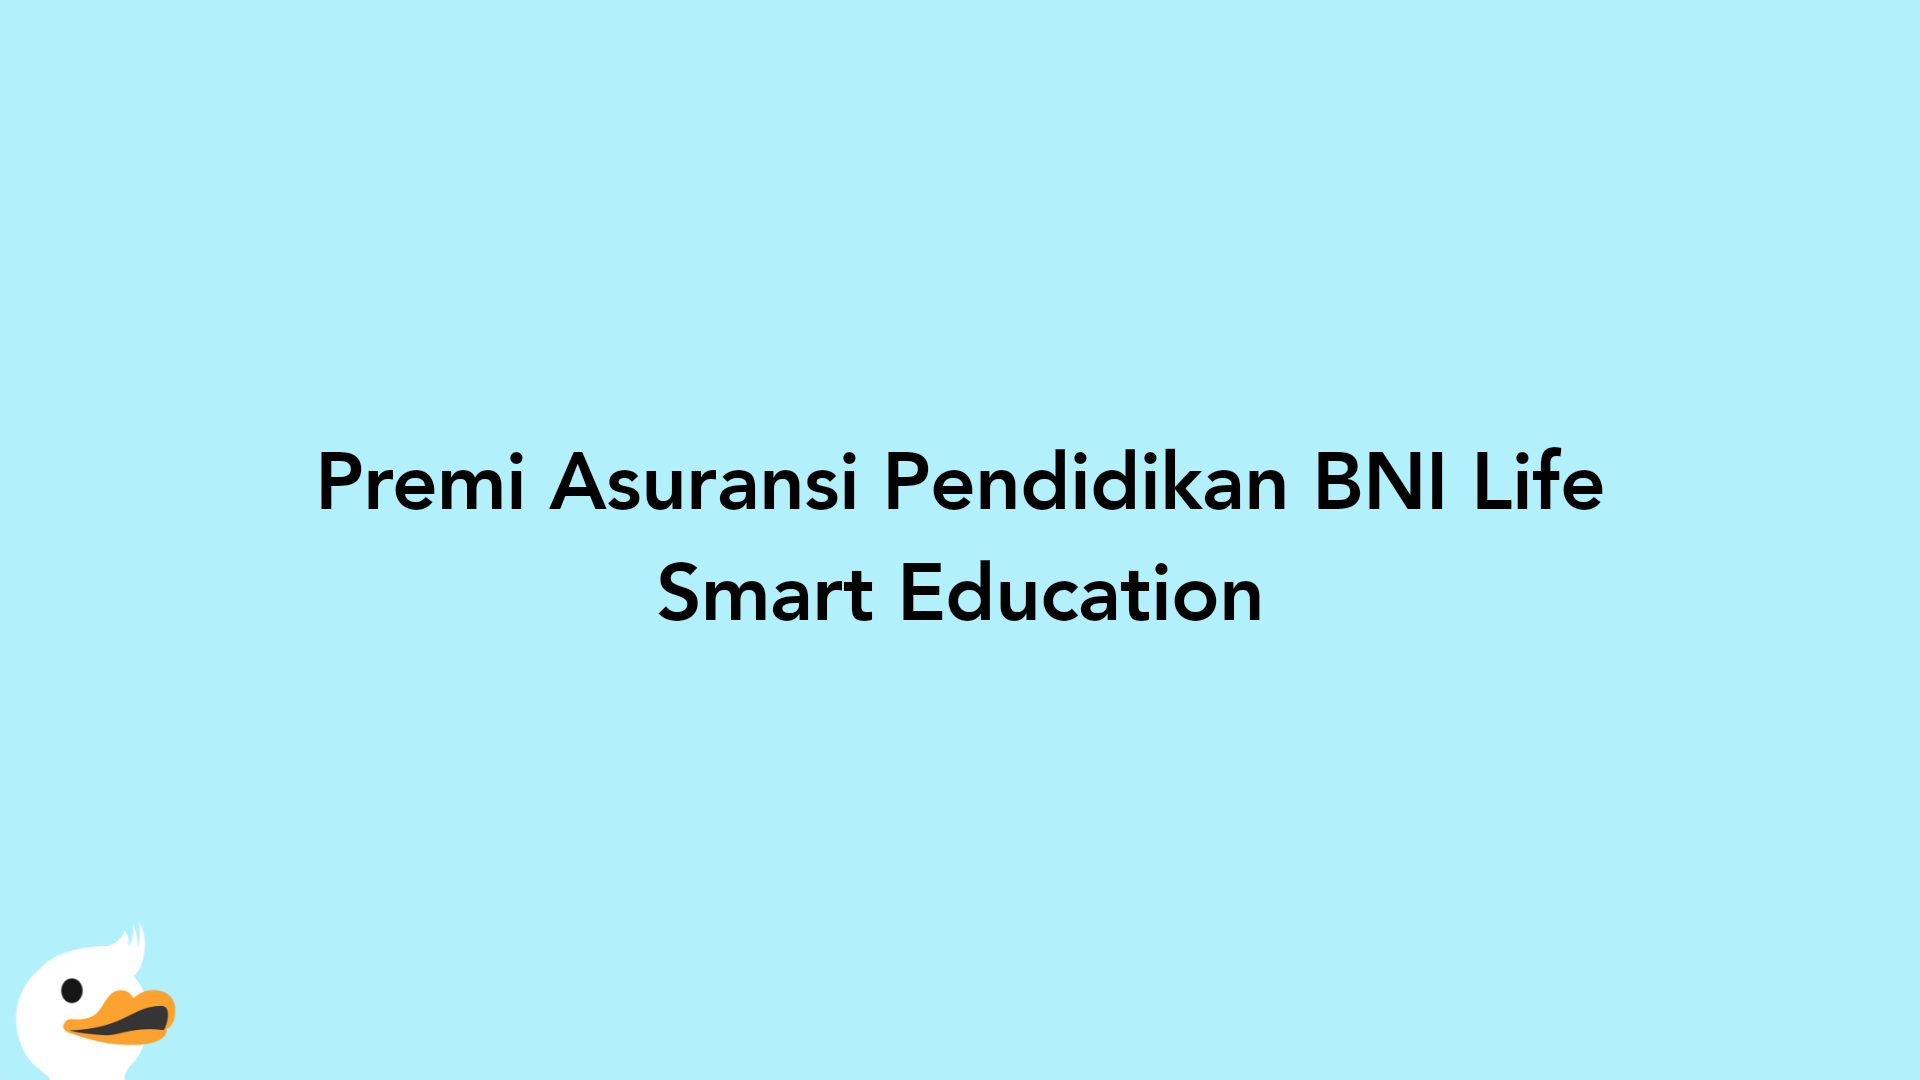 Premi Asuransi Pendidikan BNI Life Smart Education